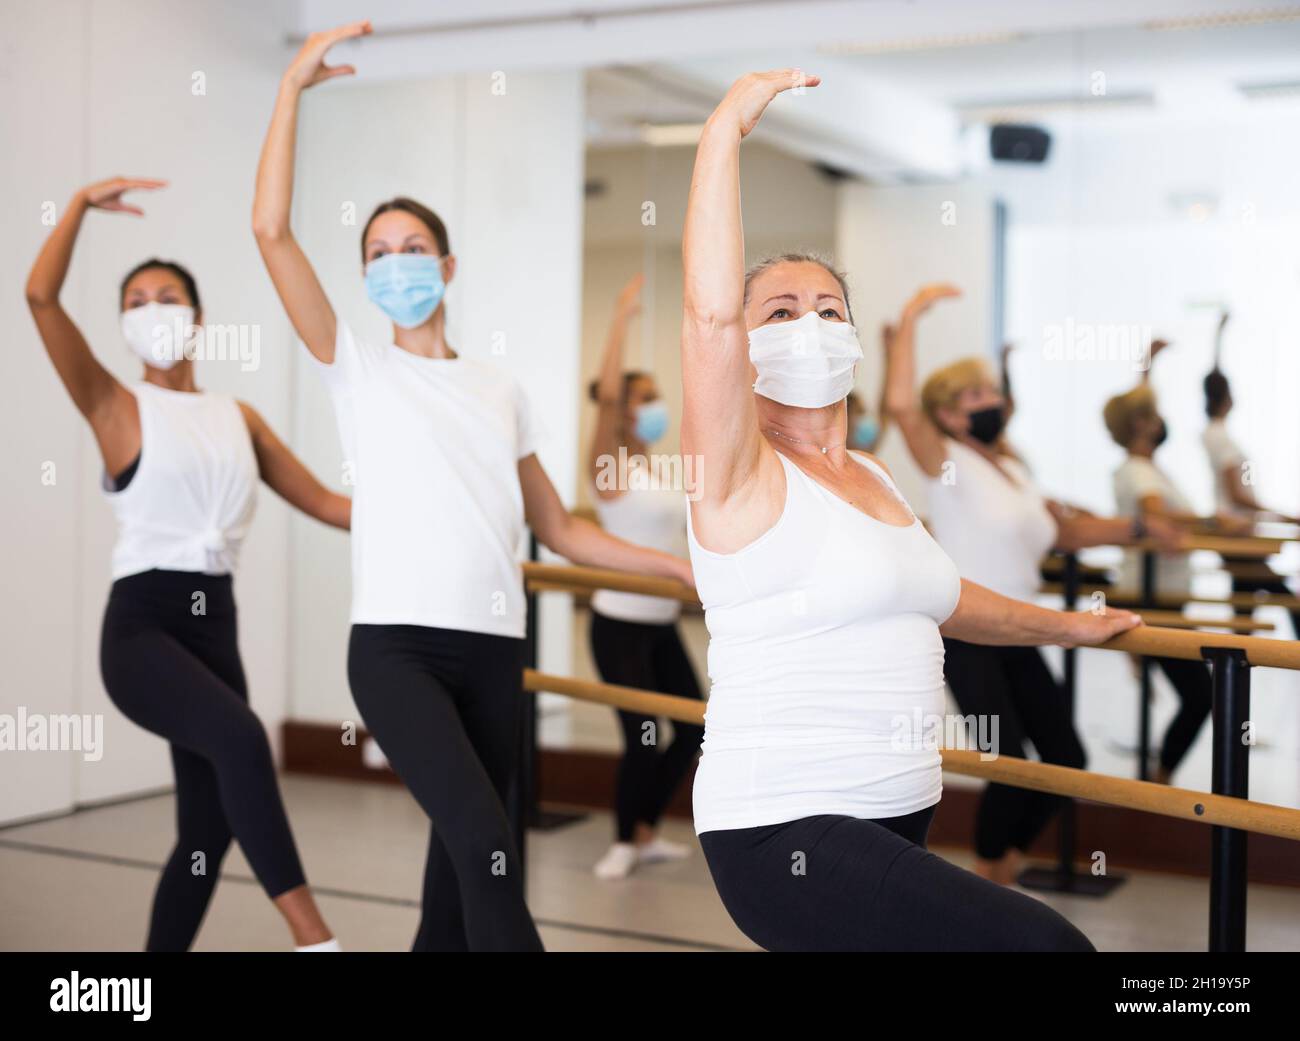 Group of women in masks doing ballet dance moves Stock Photo